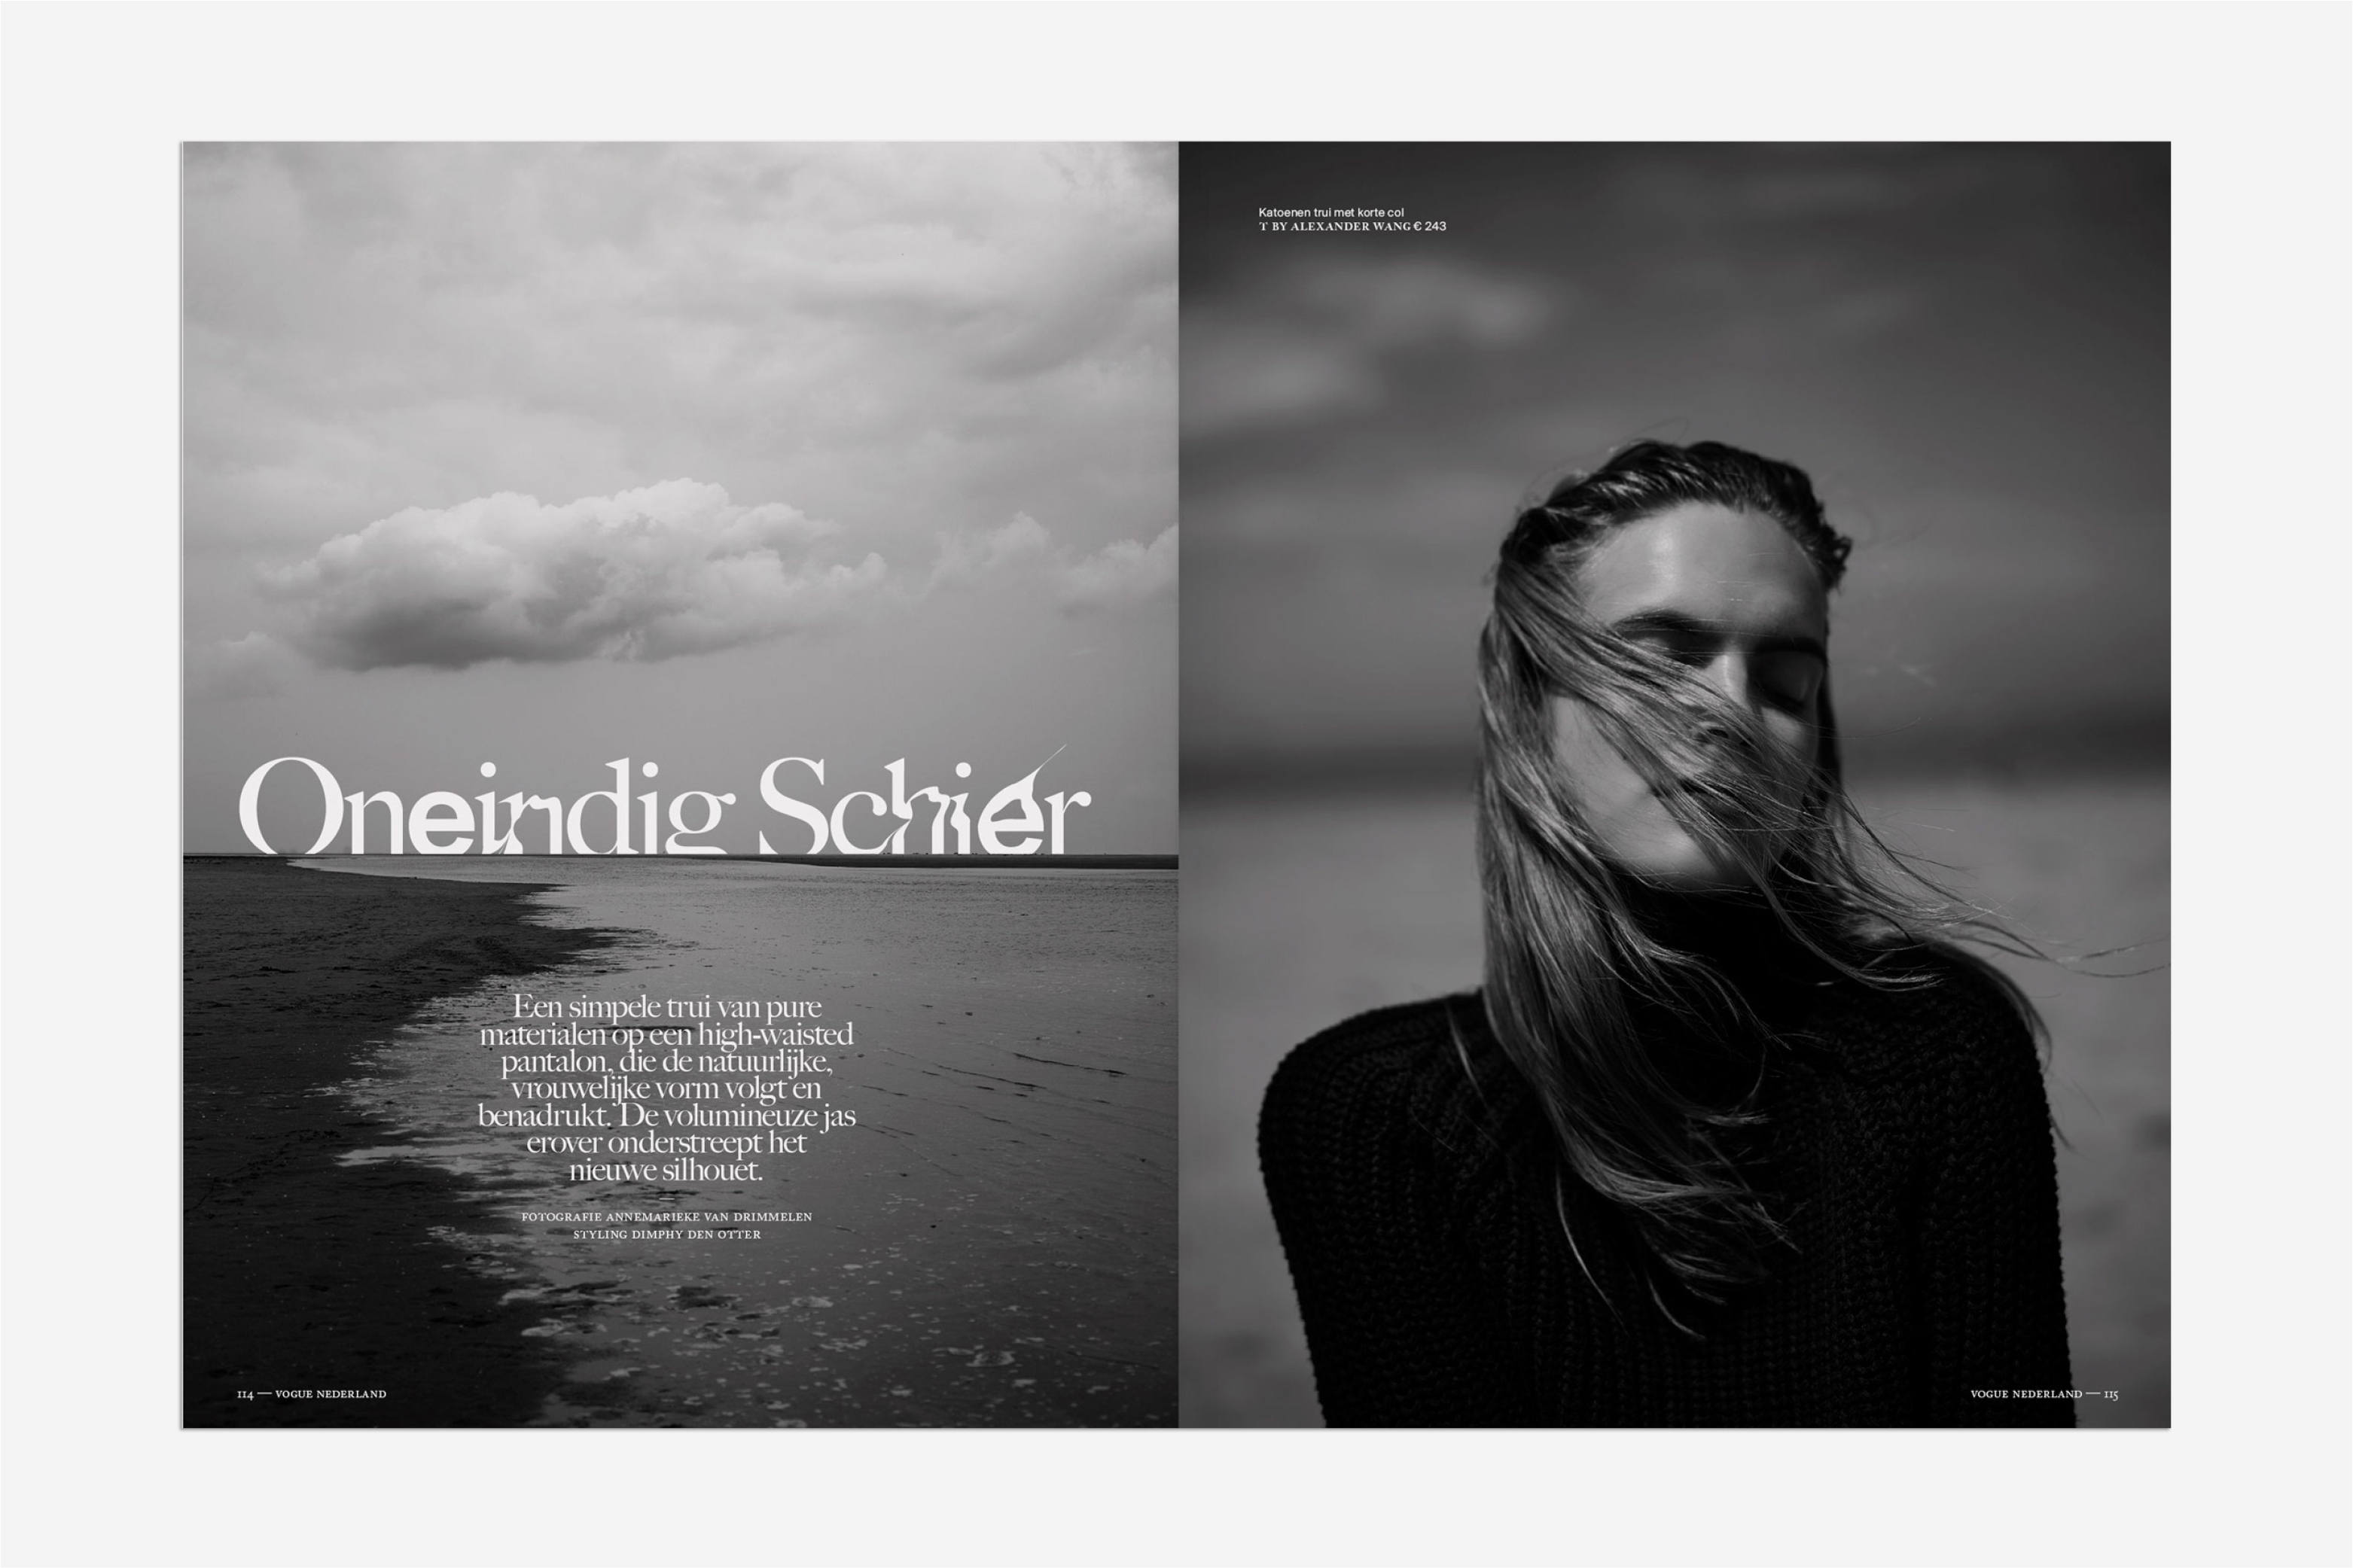 Vogue nederland, magazine, editorial design